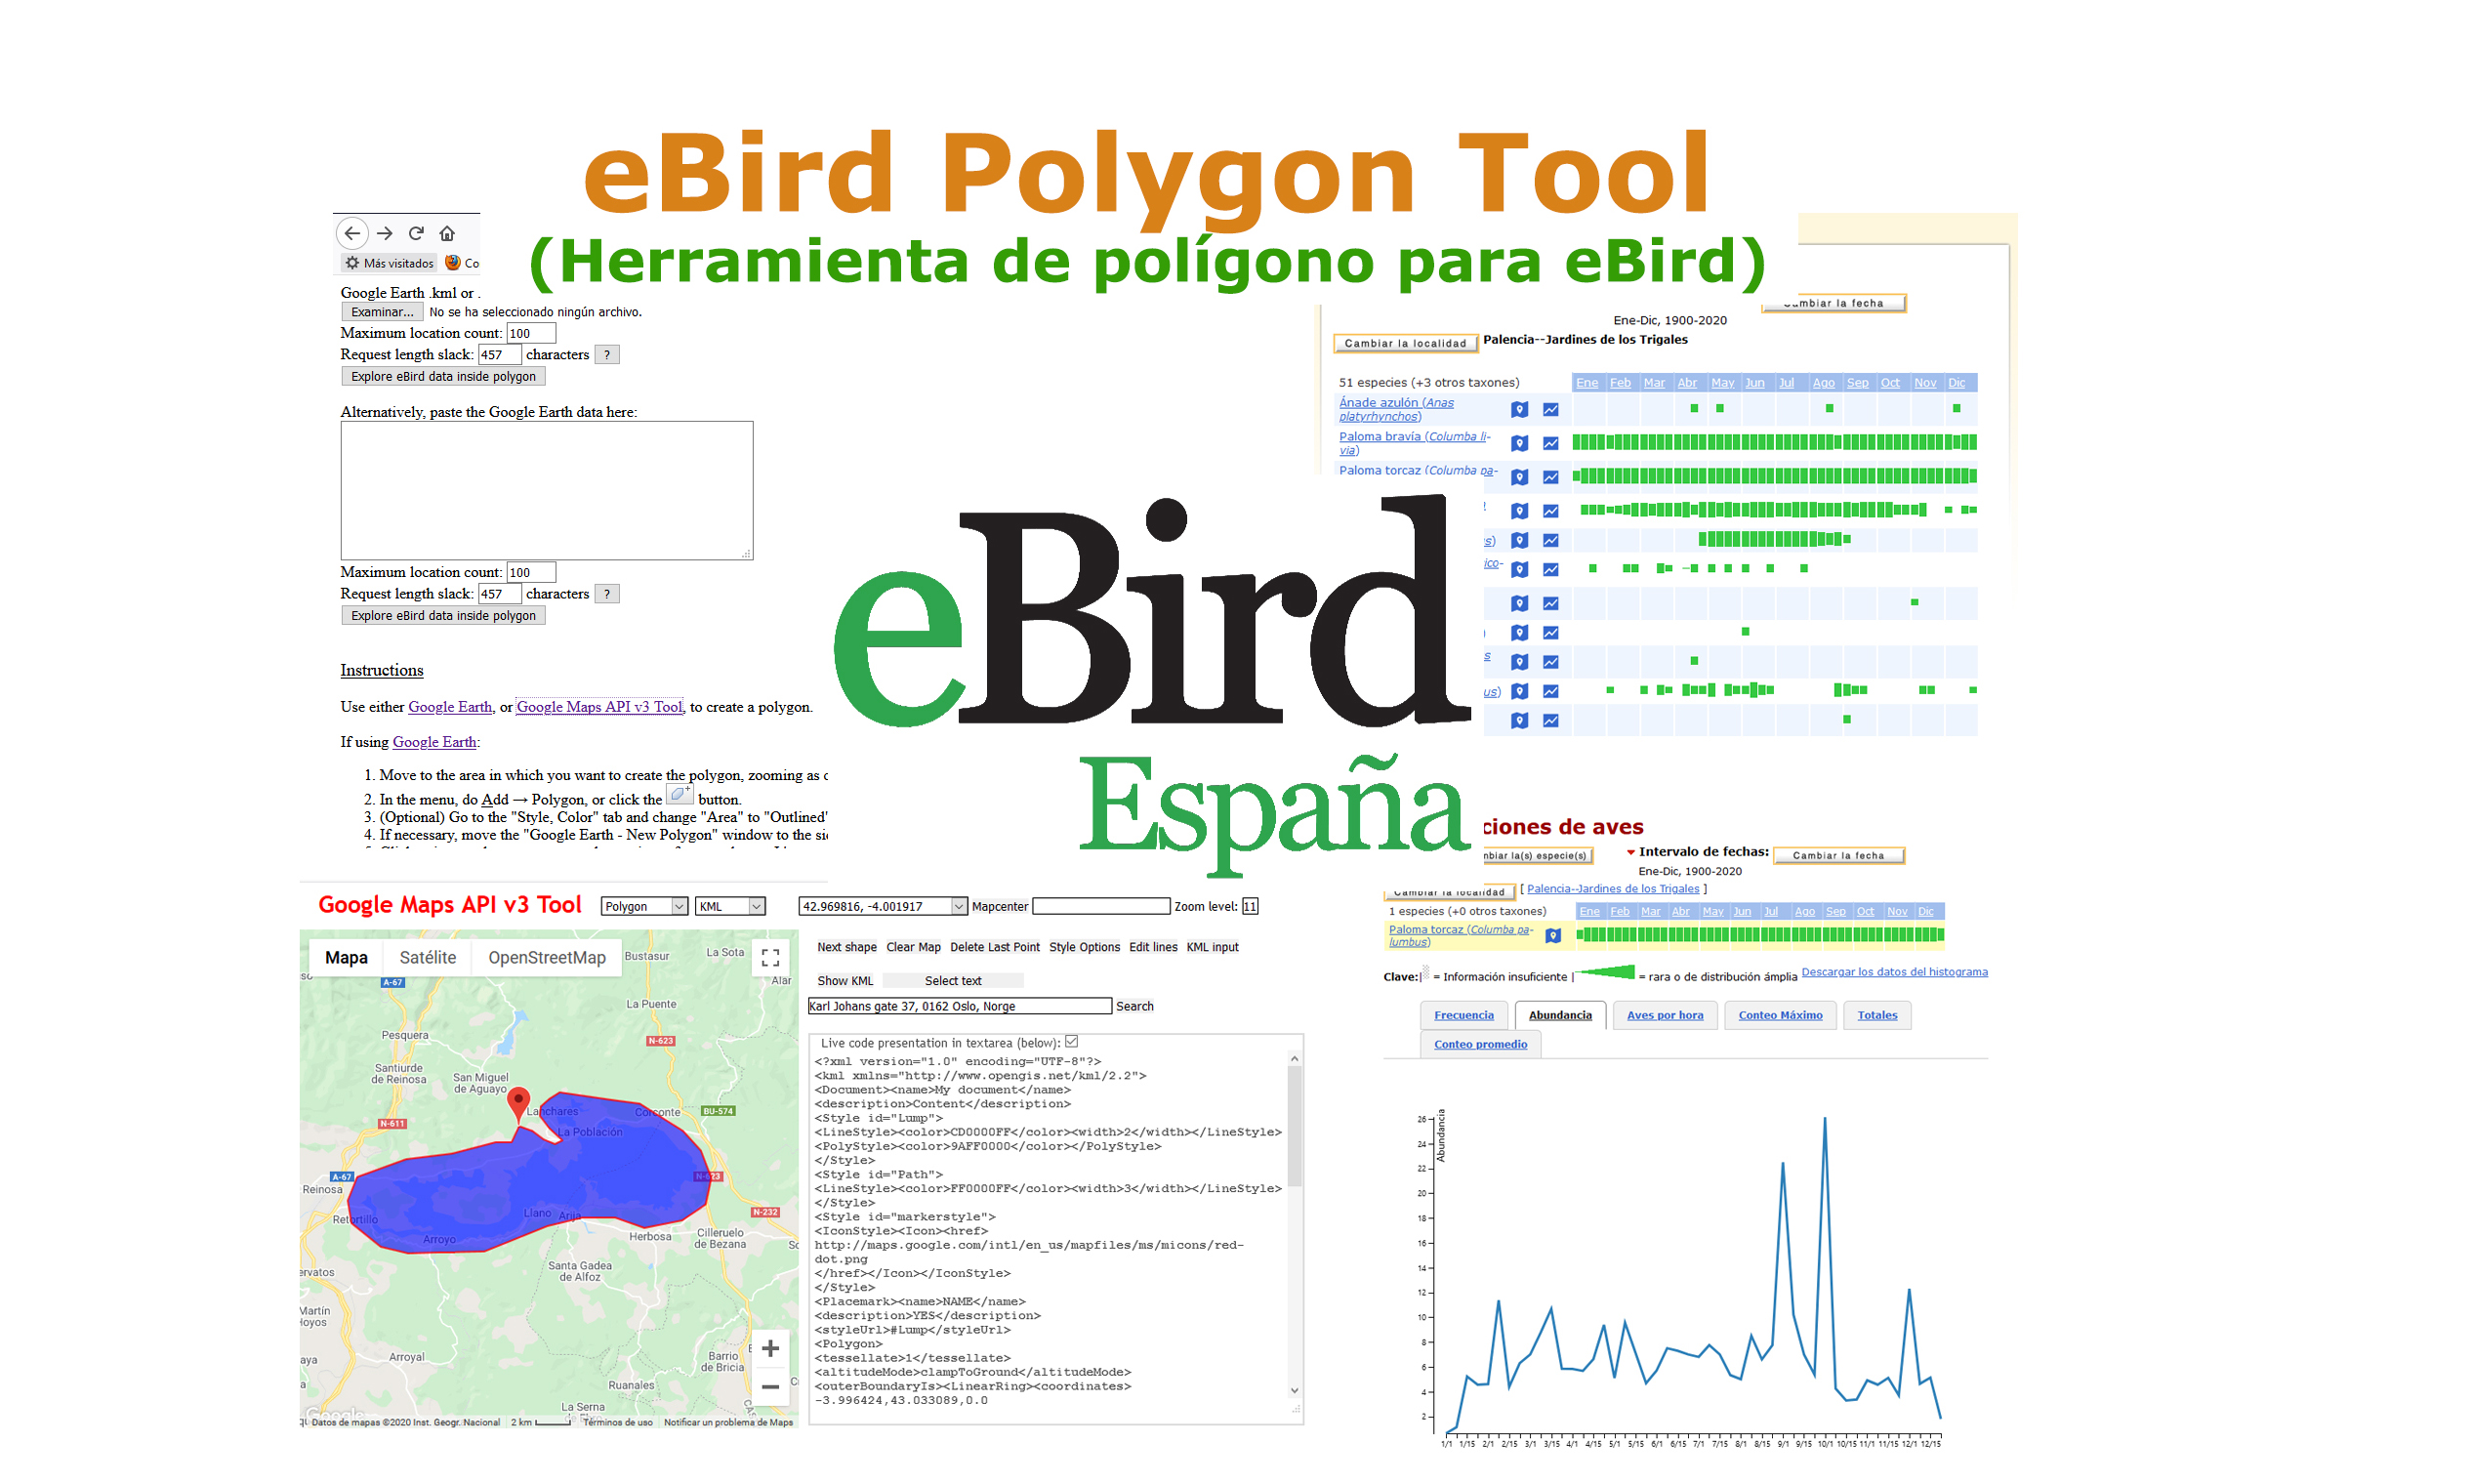 ebird.org